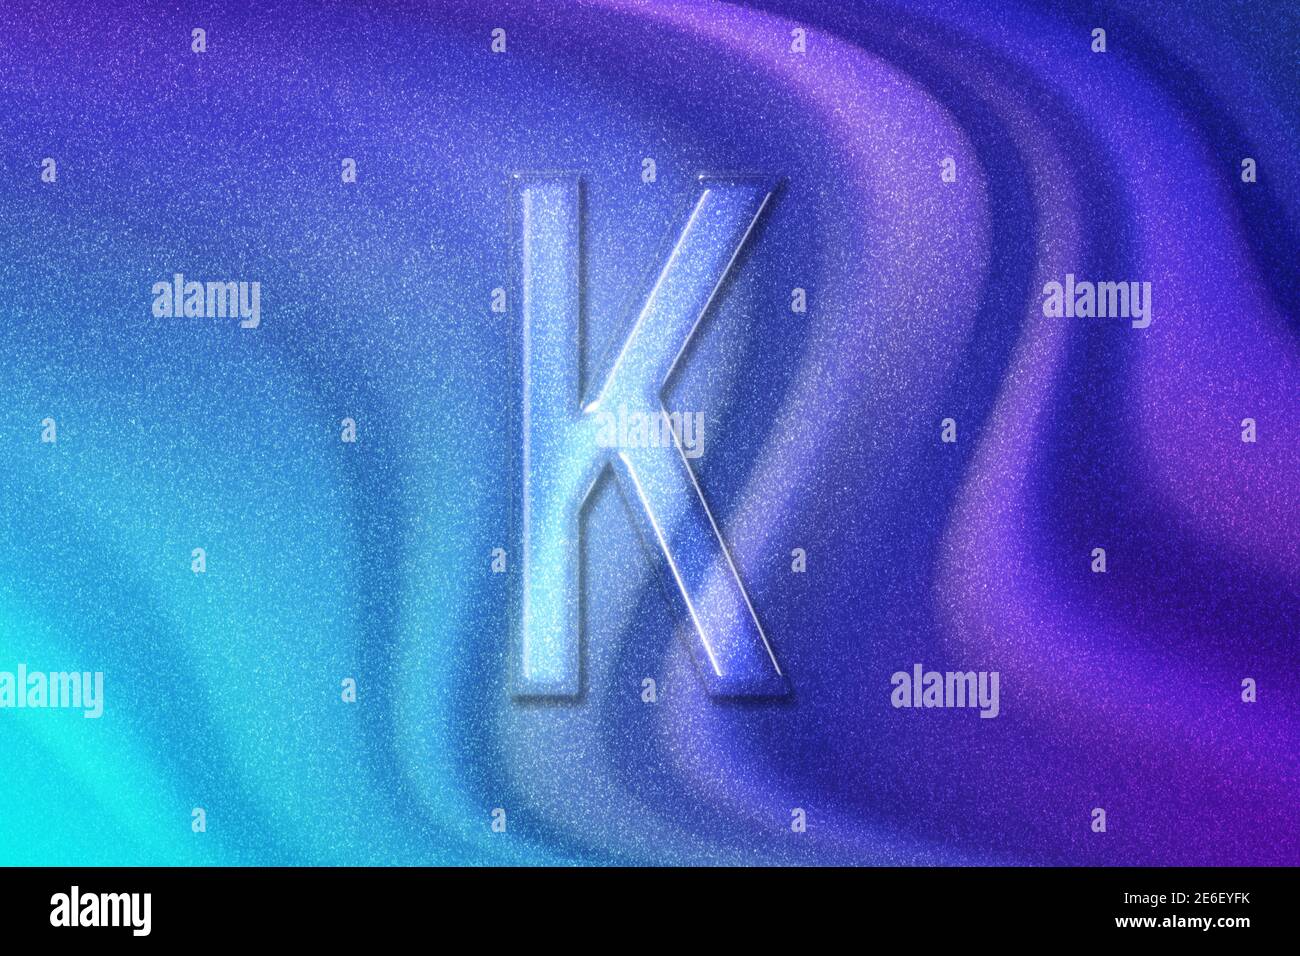 Kappa sign. Kappa letter, Greek alphabet Symbol, violet violet blue background Photo - Alamy